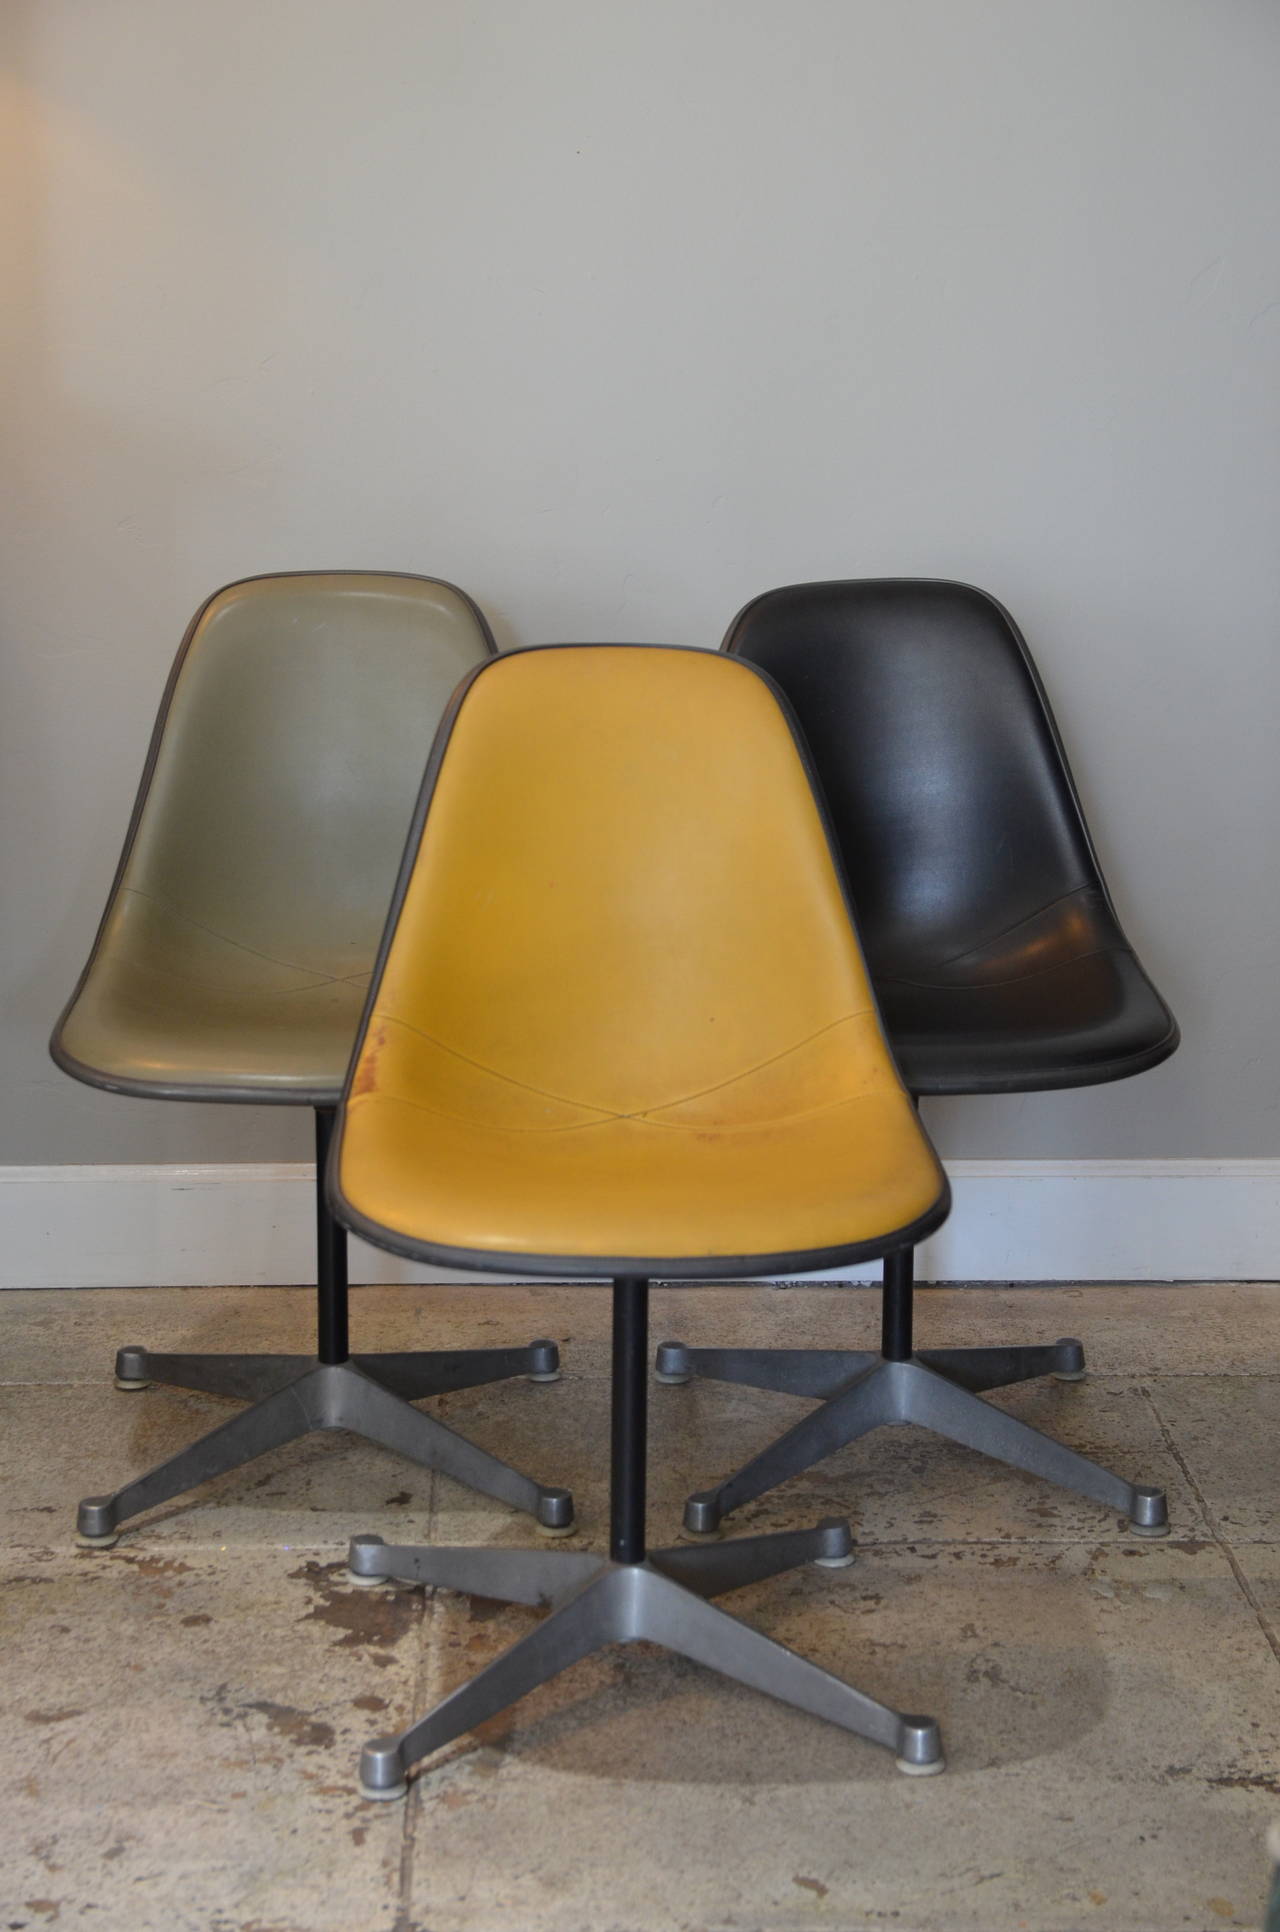 Ensemble de 3 chaises pivotantes vintage par Eames pour Herman Miller. Un noir, un gris et un jaune foncé.